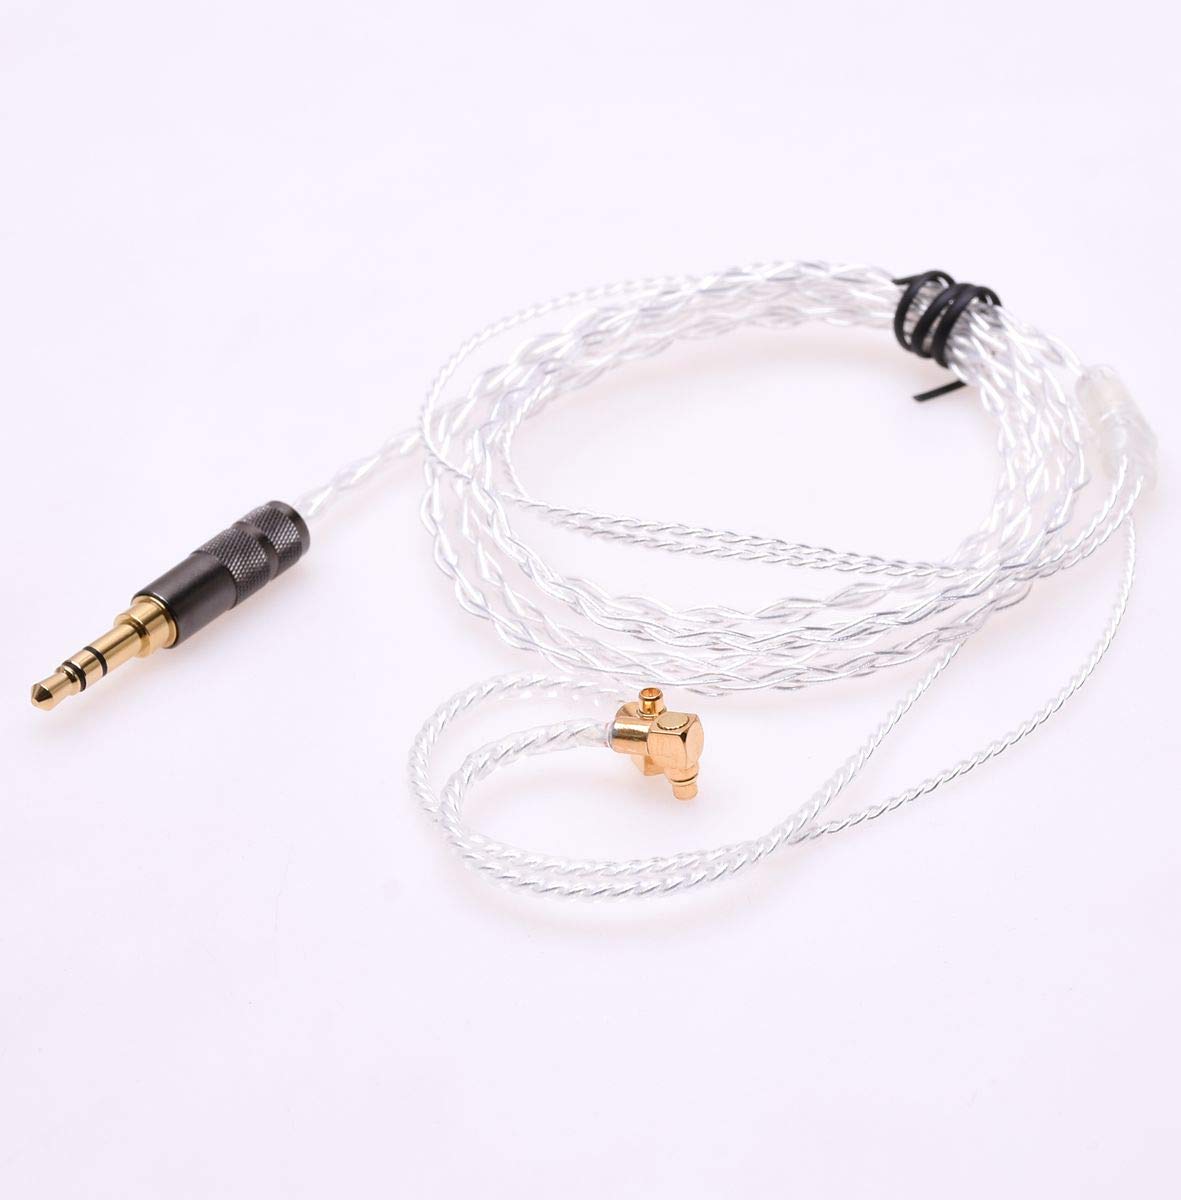 GAGACOCC 4ft Hanging Ear Silver Plated Headphone Upgrade Cable for Etymotic ER4P ER4B ER4S ER4SR ER4XR ER4PT HiFi Cable (MMCX Plug)